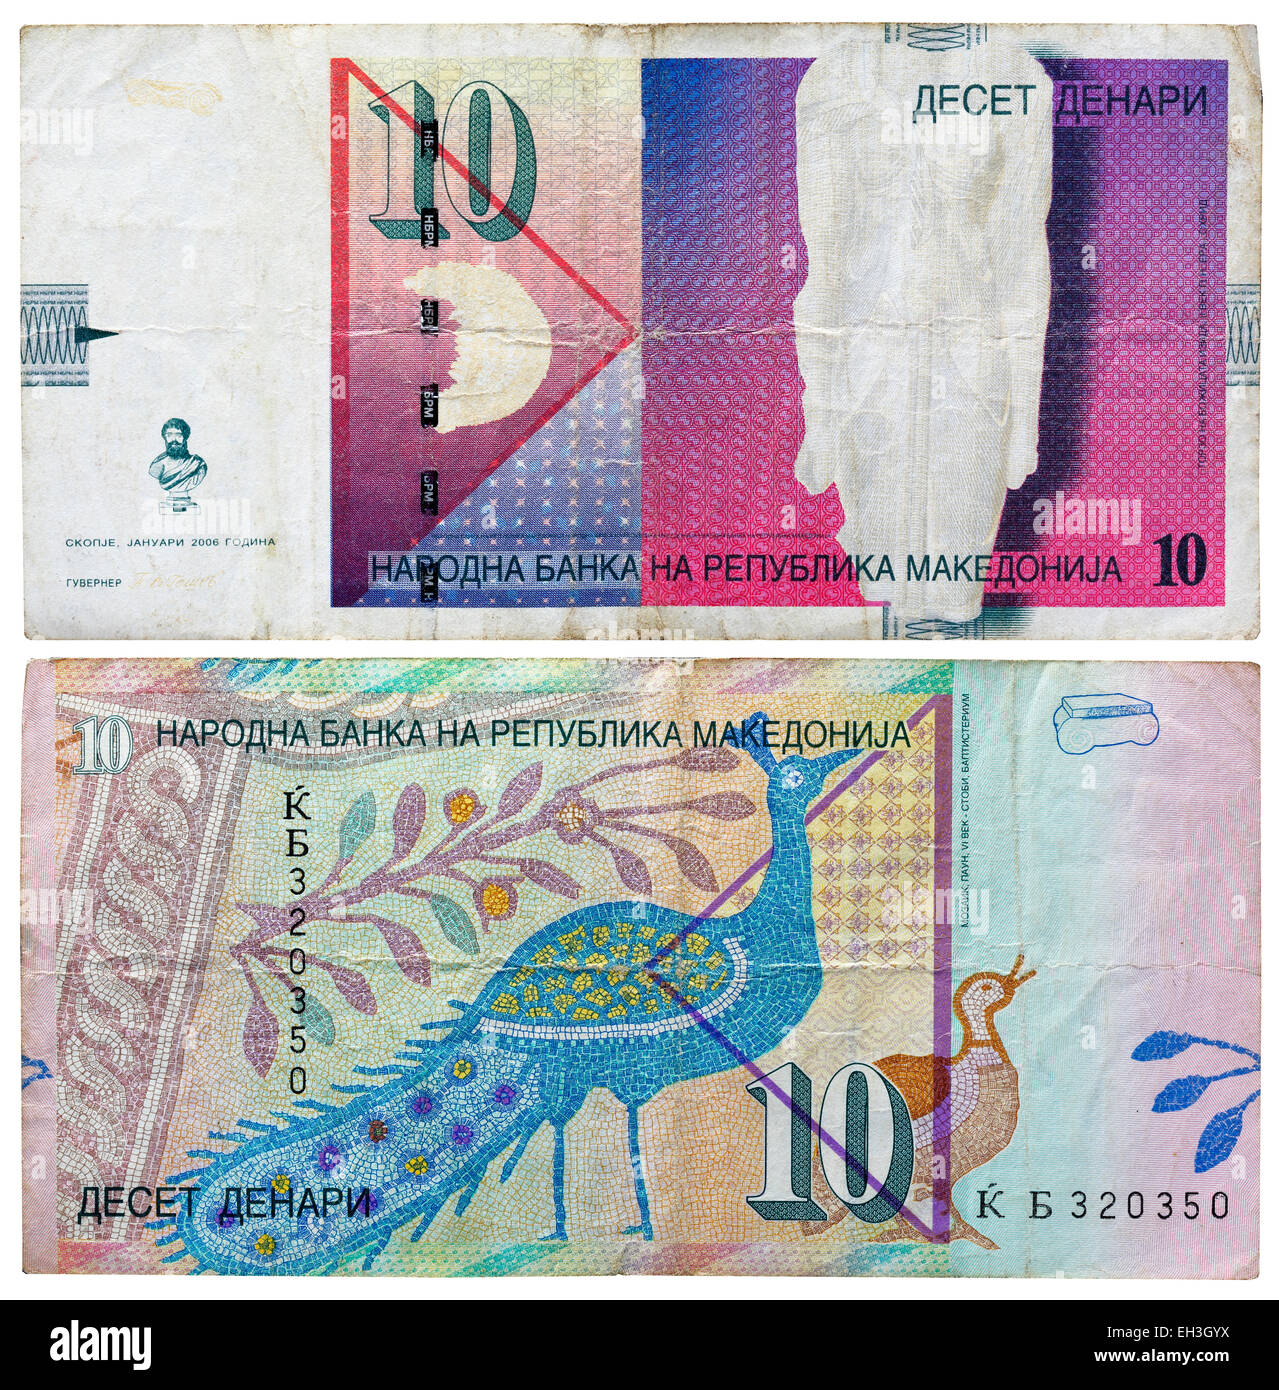 10 denari billet, mosaïque de peacock, Macédoine, 2006 Banque D'Images